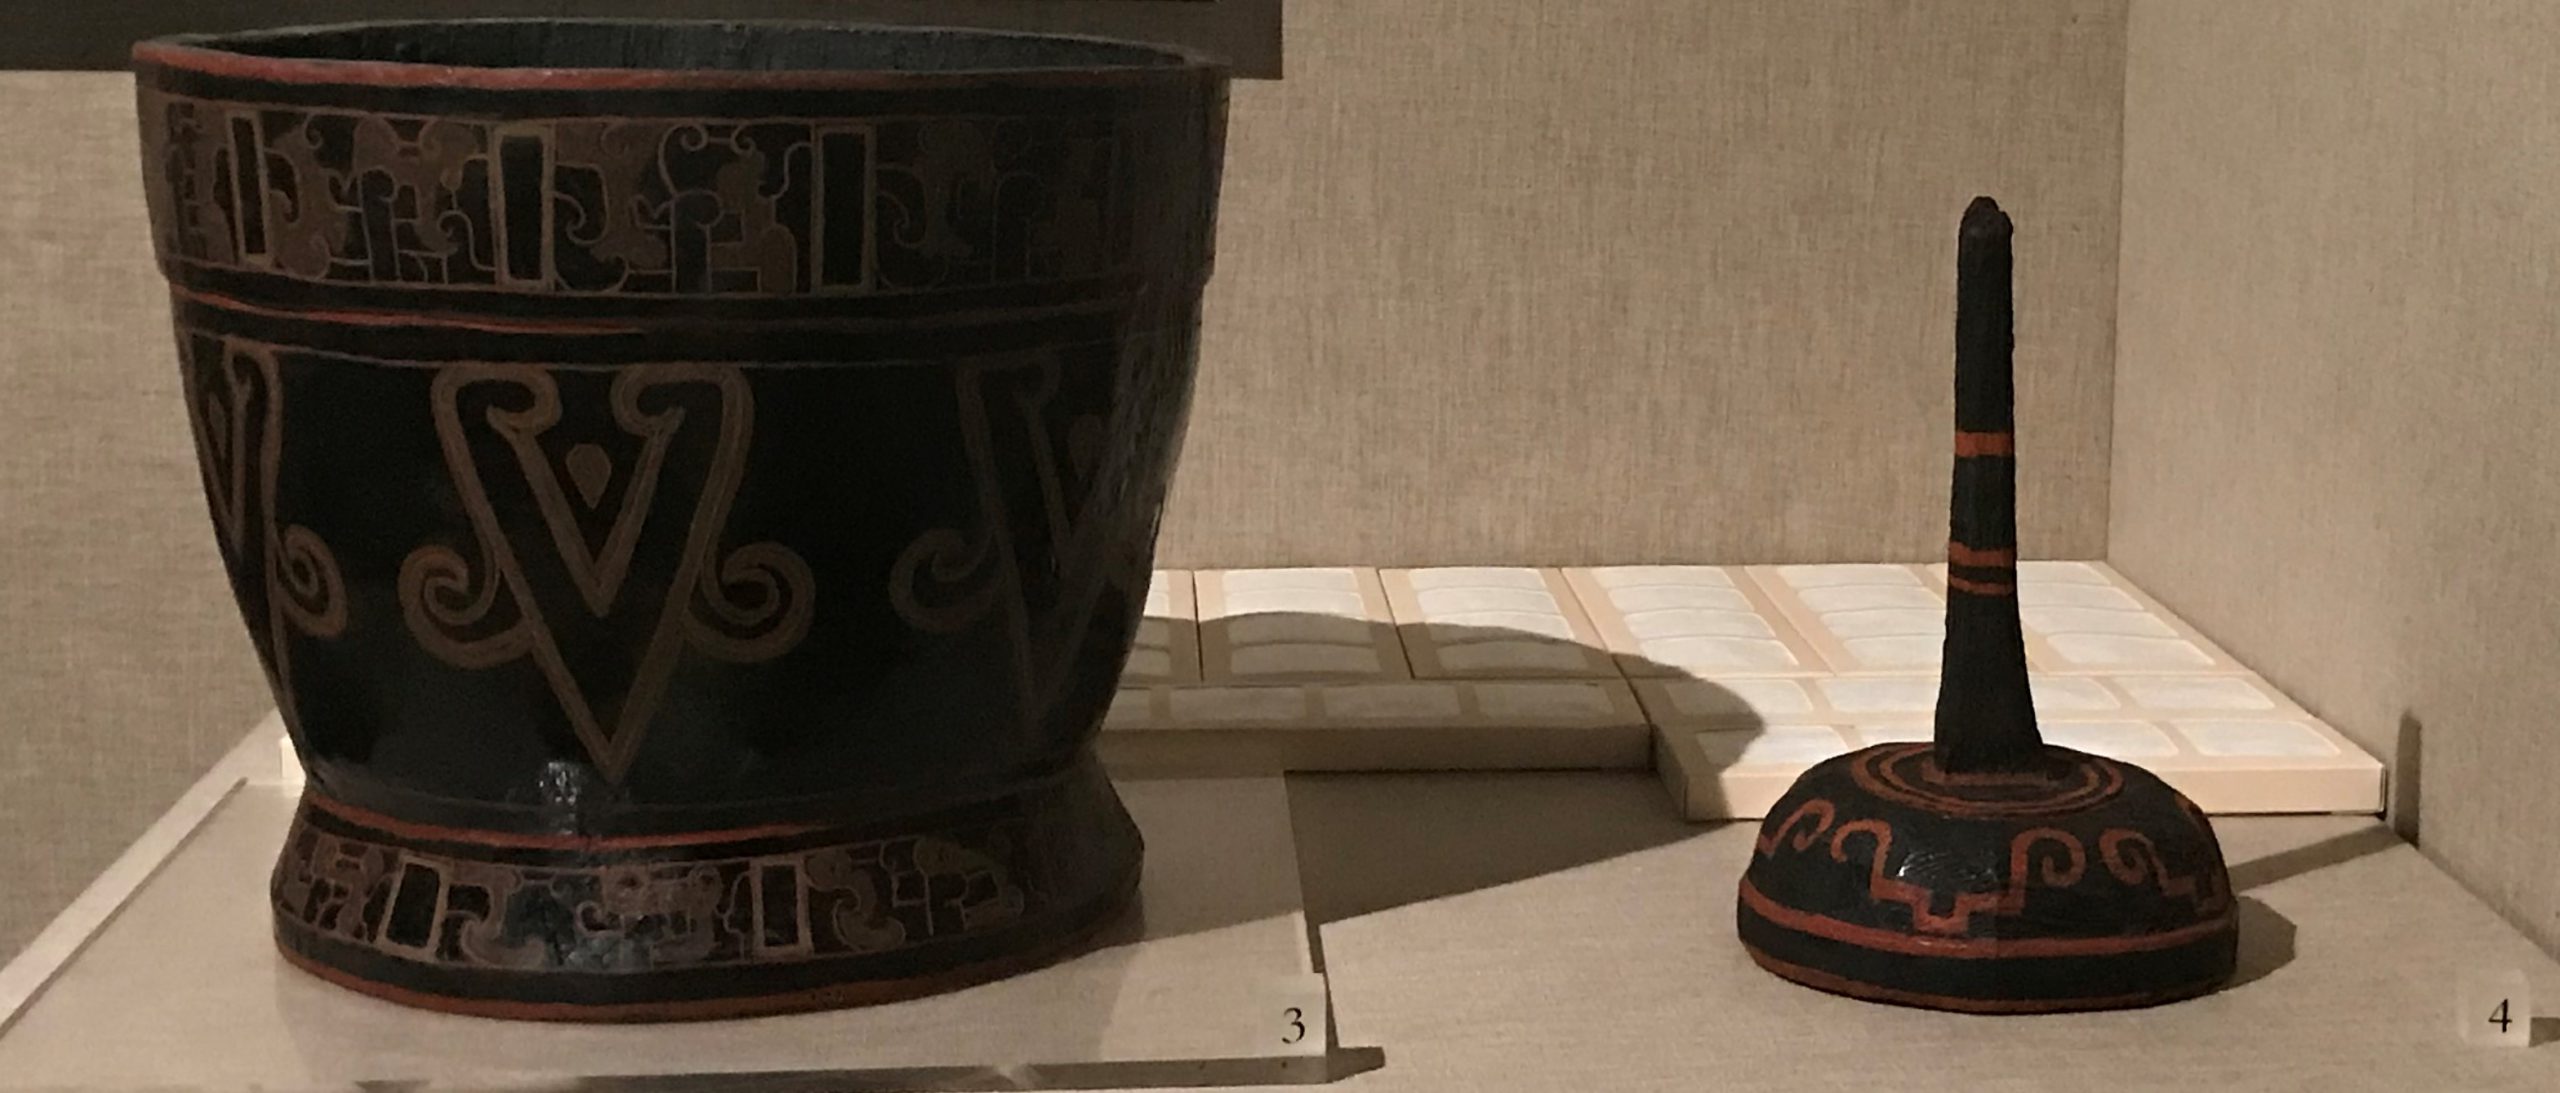 漆机-漆簋-漆虎形构件-漆豆-漆器座-漆禁-先秦時代-常設展F２-成都博物館